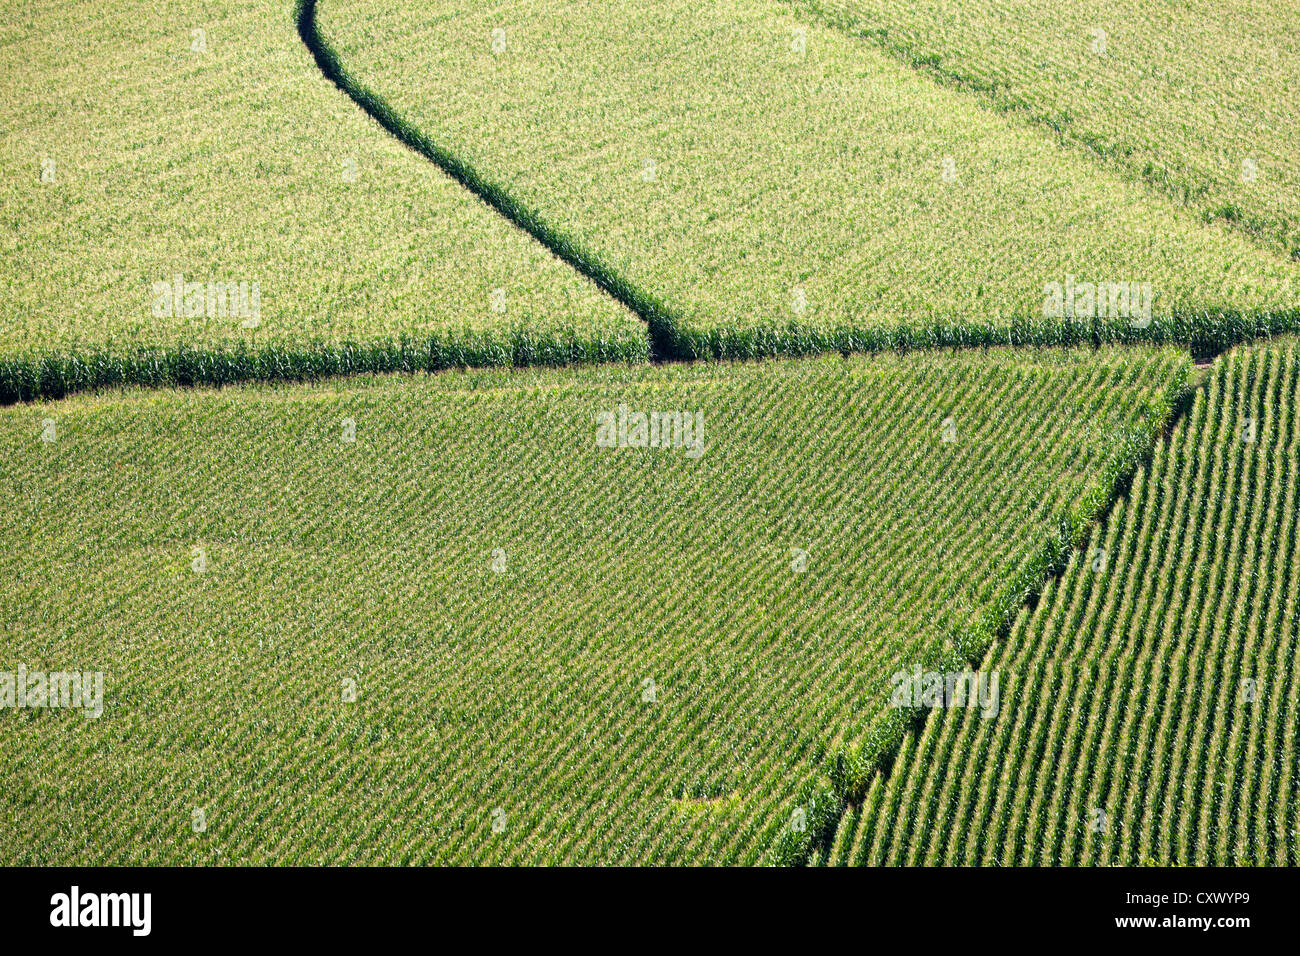 Los patrones de cultivo en un campo Foto de stock